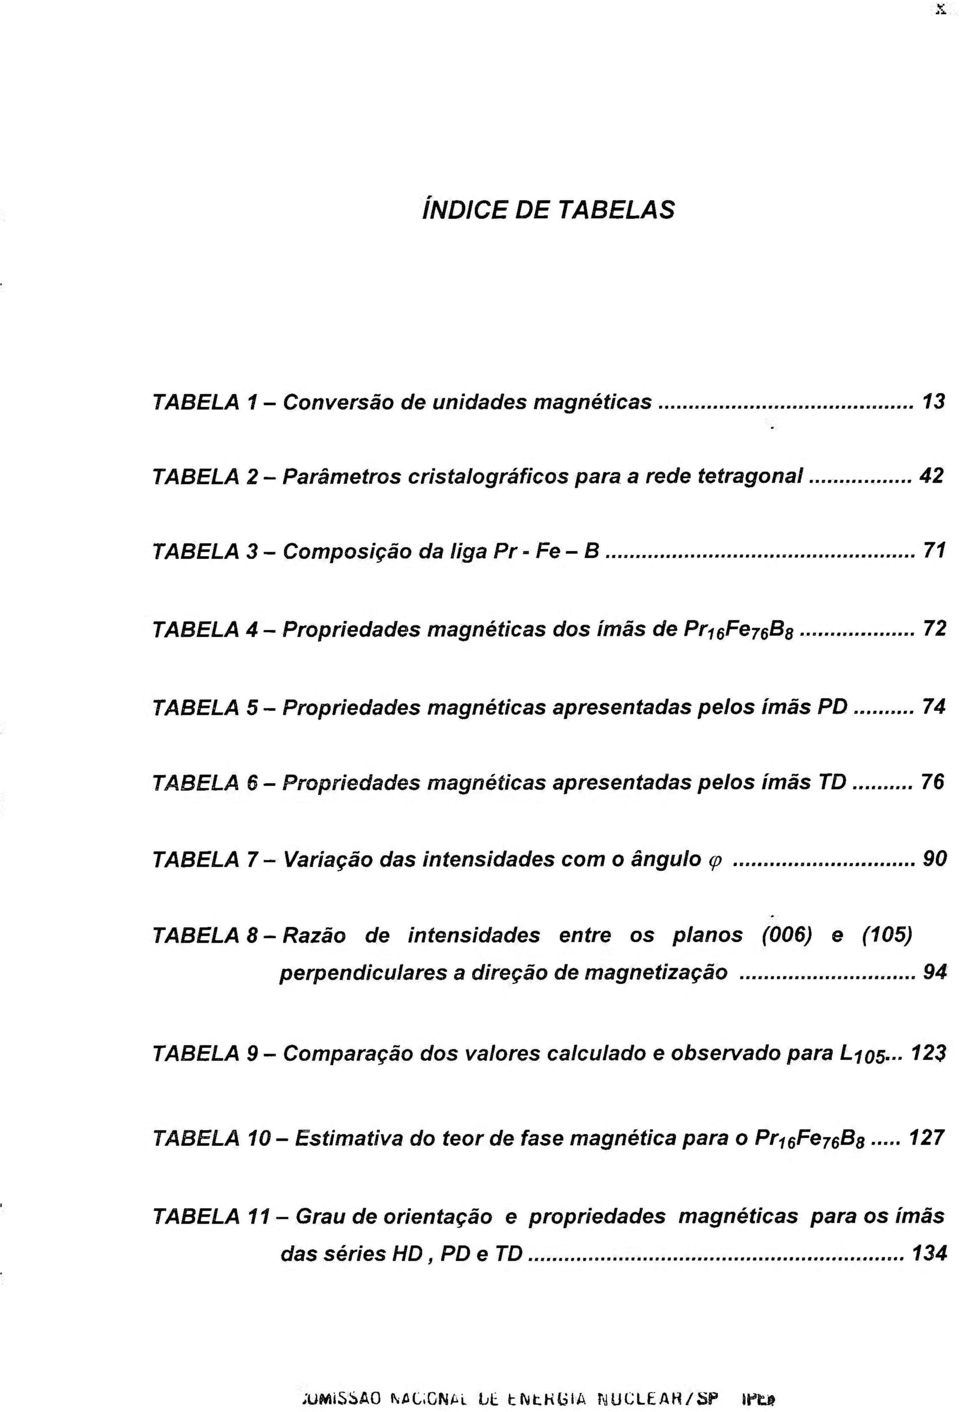 ..72 TABELA 5 - Propriedades magnéticas apresentadas pelos imãs PD 74 TABELA 6 - Propriedades magnéticas apresentadas pelos ímãs TD 76 TABELA 7 - Variação das intensidades com o ângulo <p 90 TABELA 8